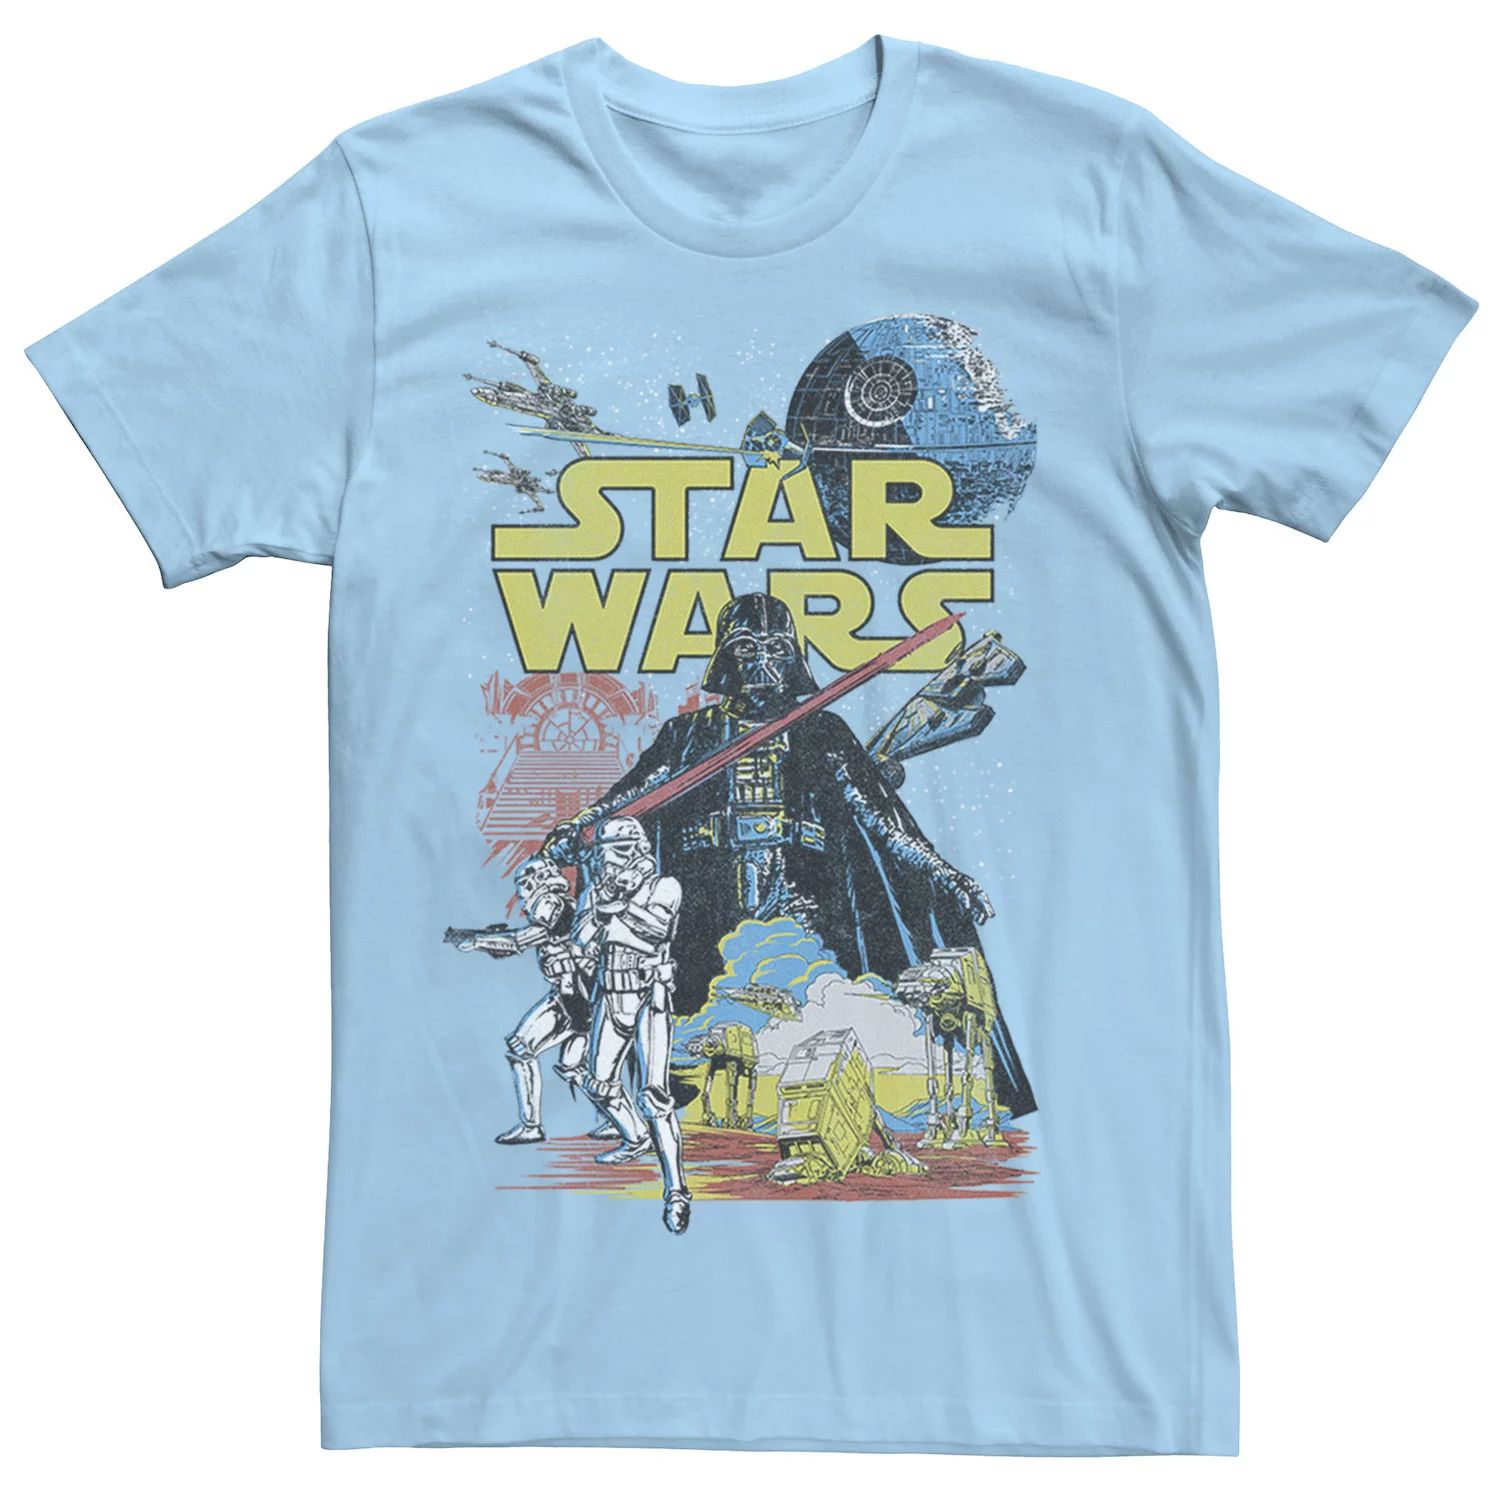 Мужская классическая футболка с графическим плакатом Rebel Star Wars, светло-синий